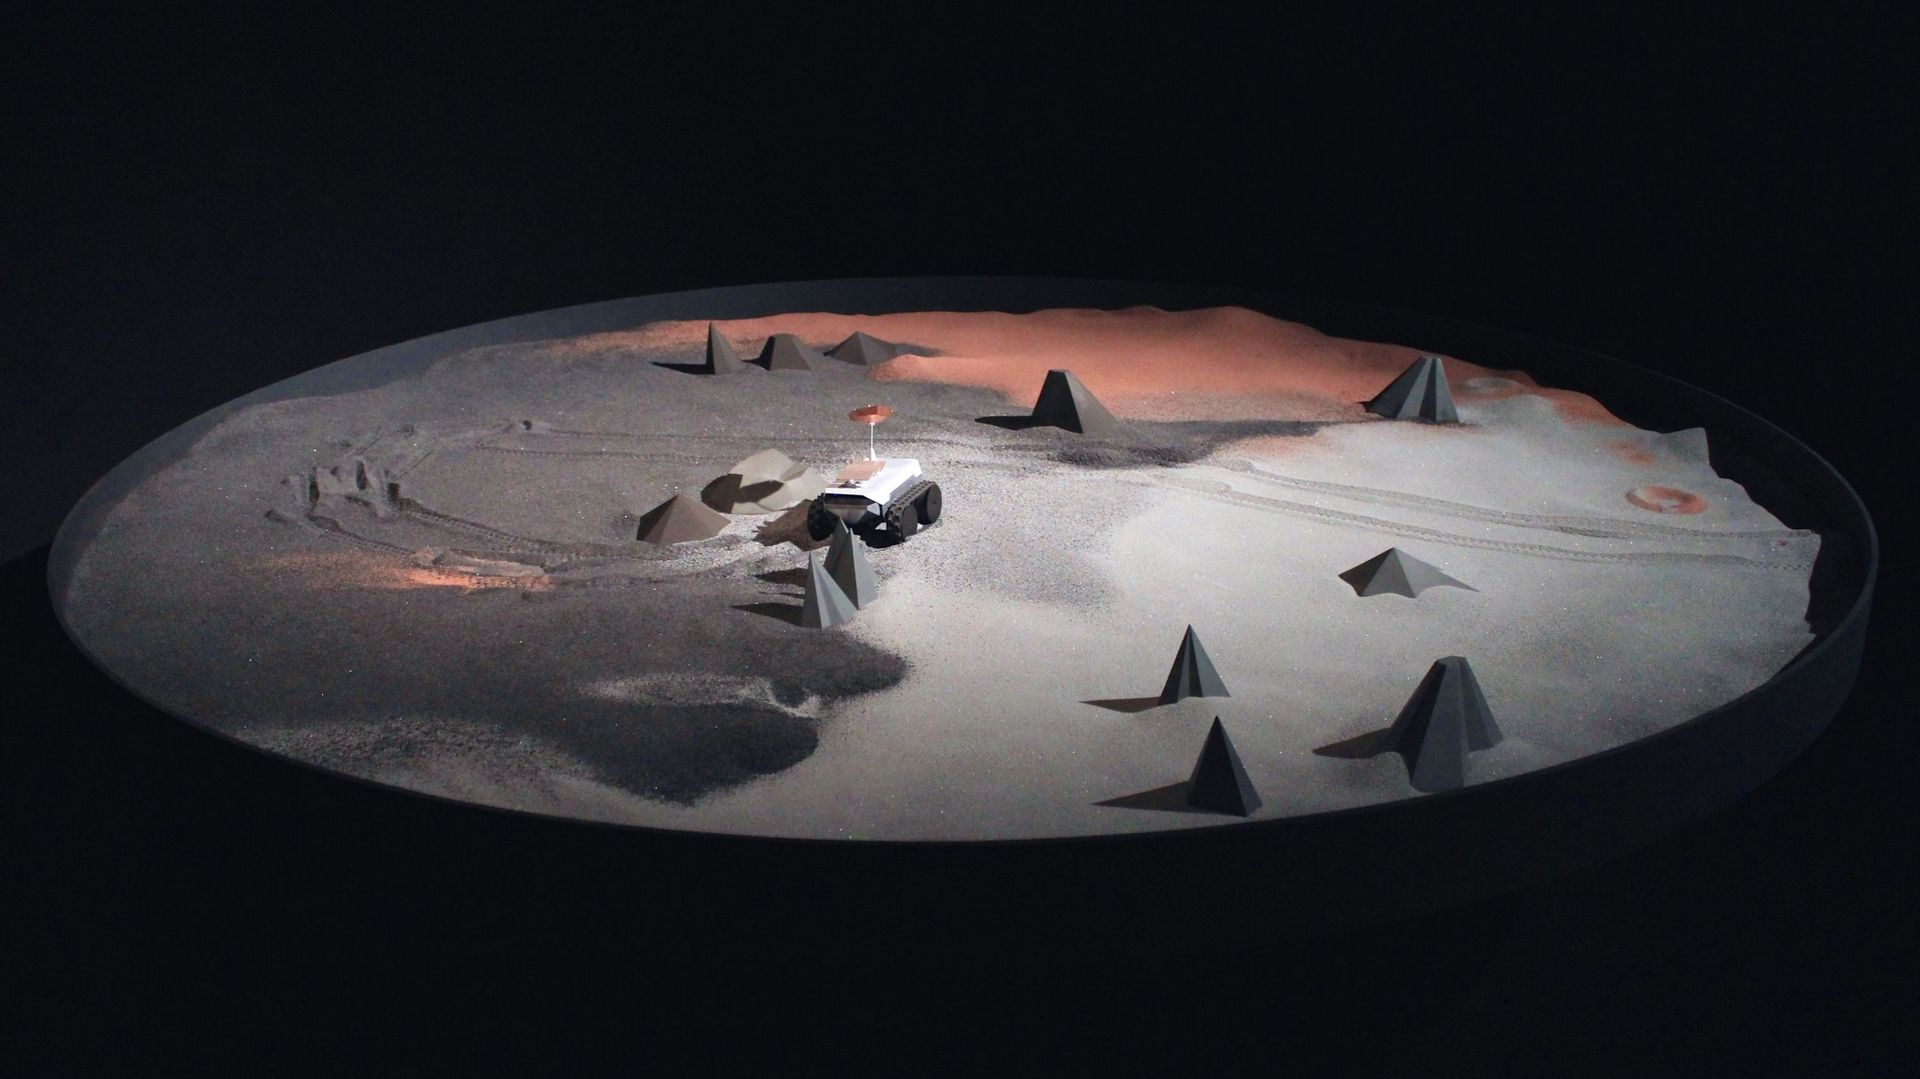 Visuel de l’exposition "Cosmos" : Sea of Tranquility